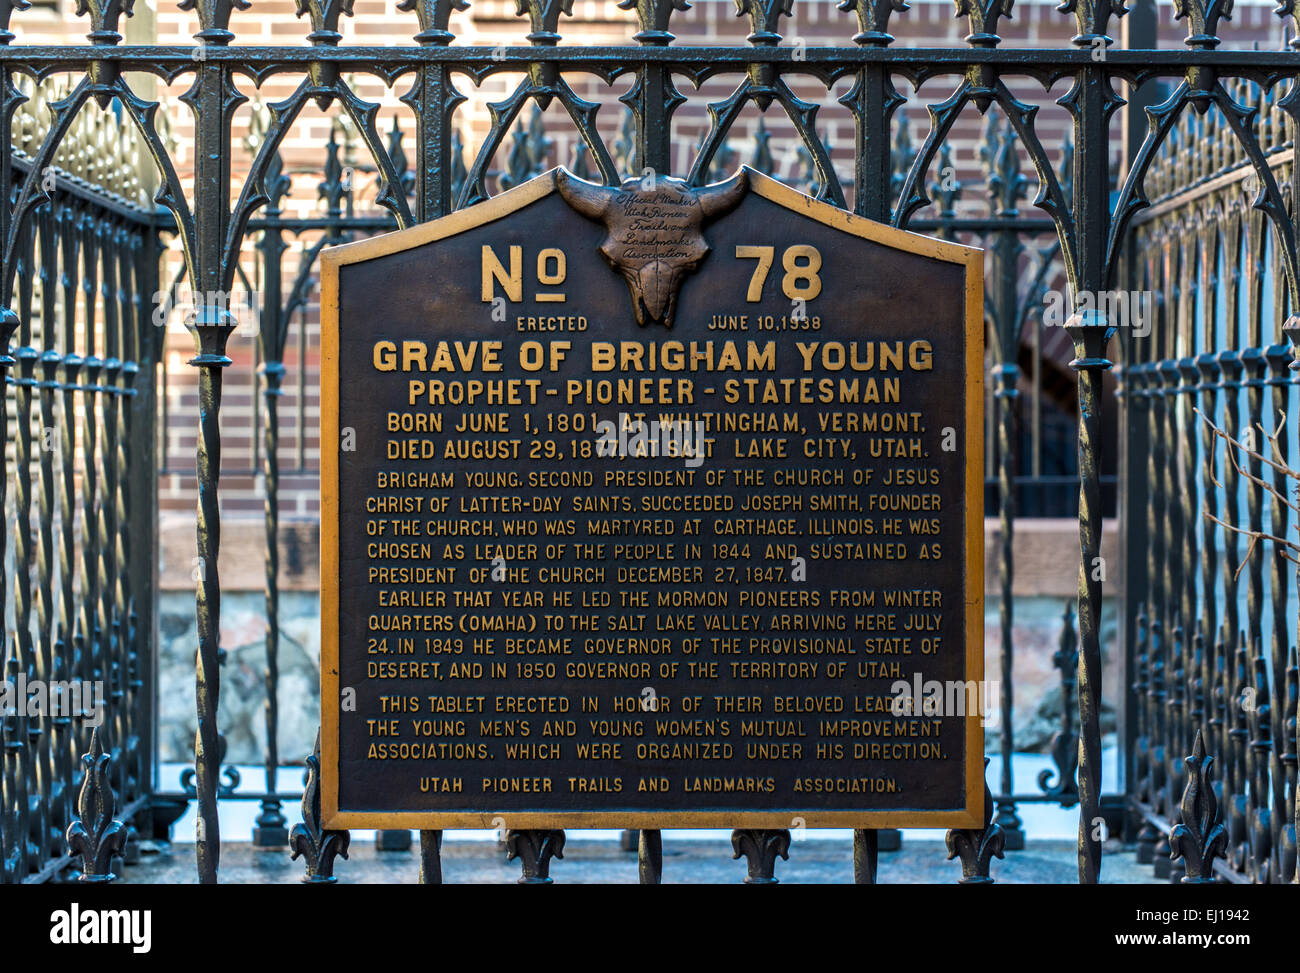 Das Grab Marker von Brigham Young, einer berühmten frühen Führer der Mormonen (LDS) Kirche. Befindet sich in Salt Lake City, Utah Stockfoto